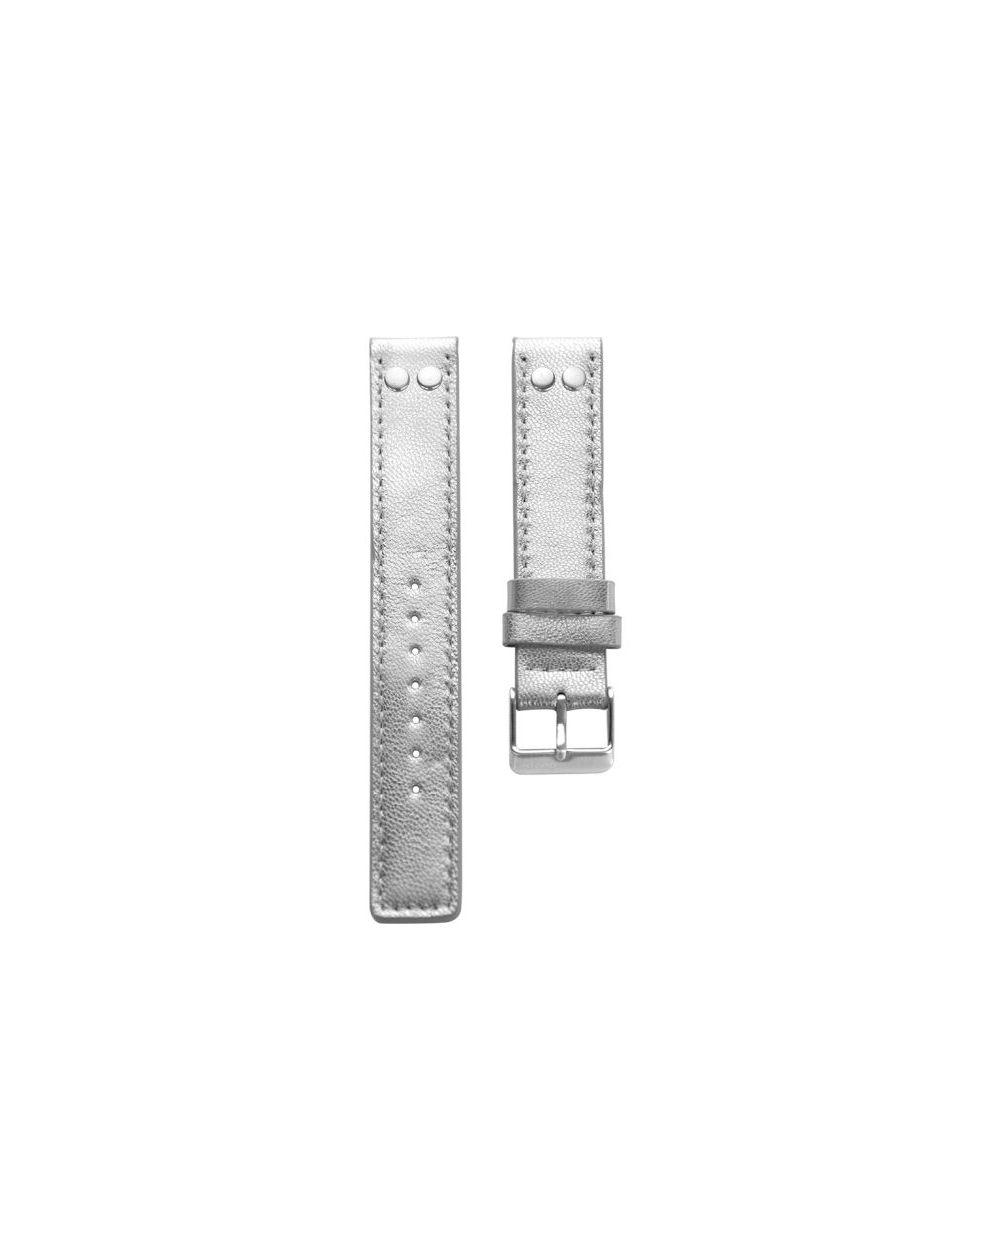 4.18 - silver studs 18 mm. - Bracelet pour montre Oozoo